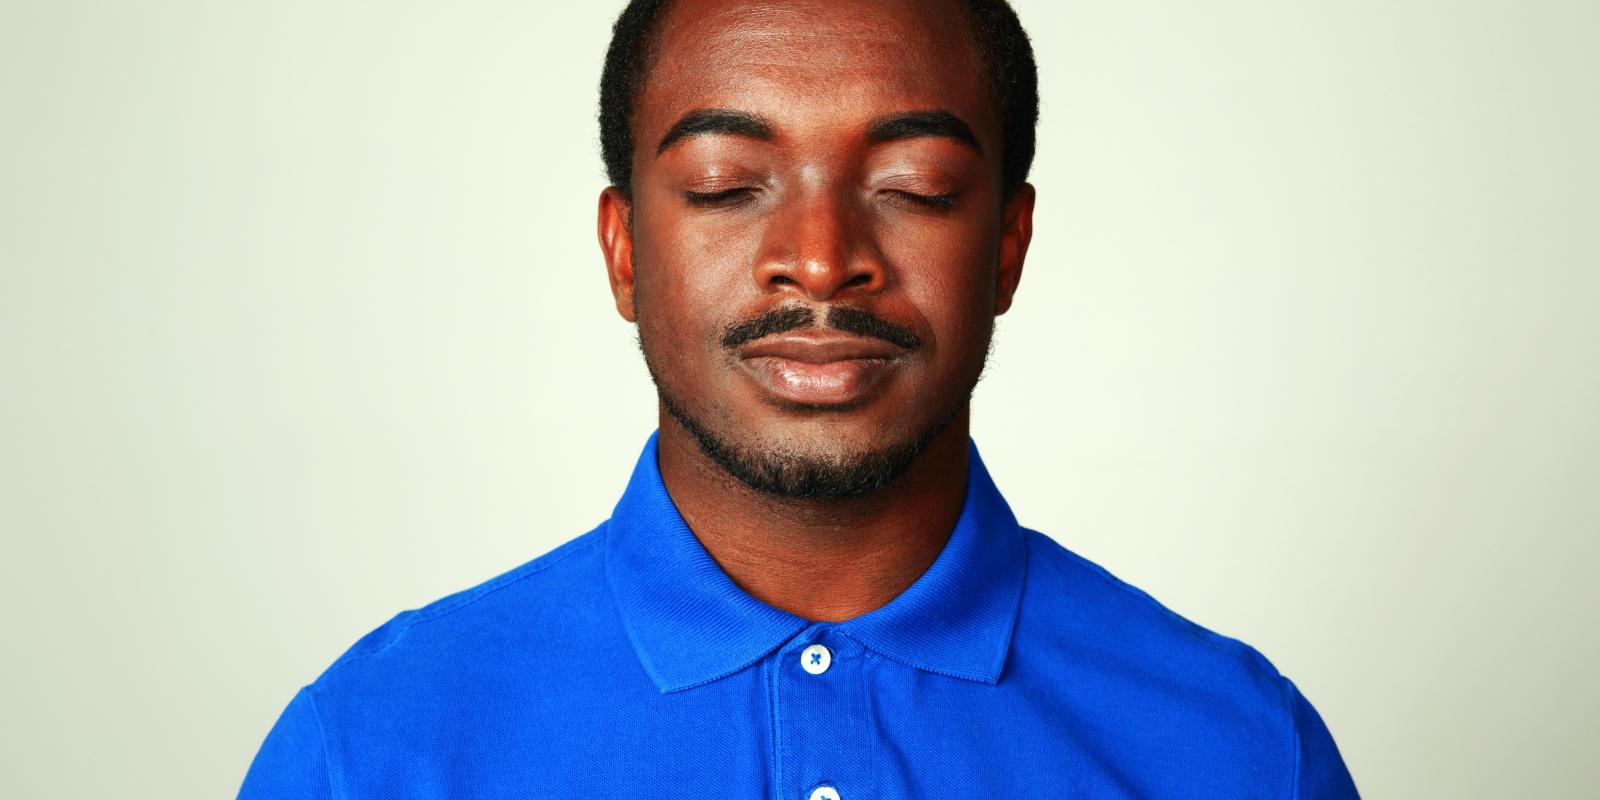 Bilde av melaninrik mann i blå skjorte med lukkede øynene.